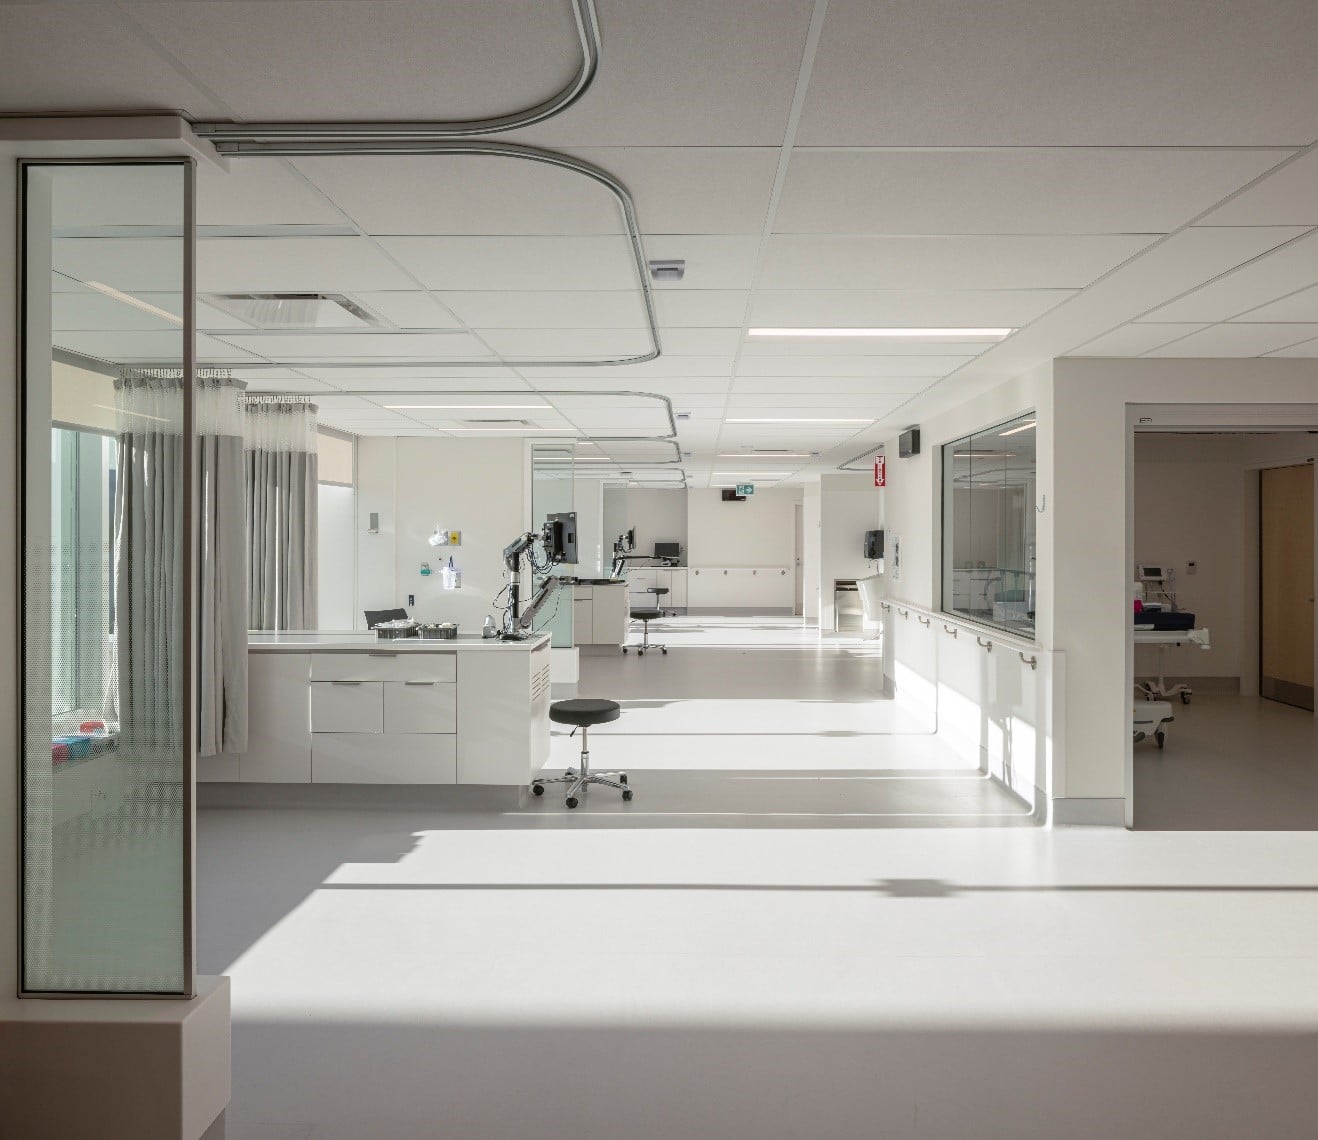 CHUQ-Healthcare-Quebec-Architecture-Design-Lemay-Hospital Interior